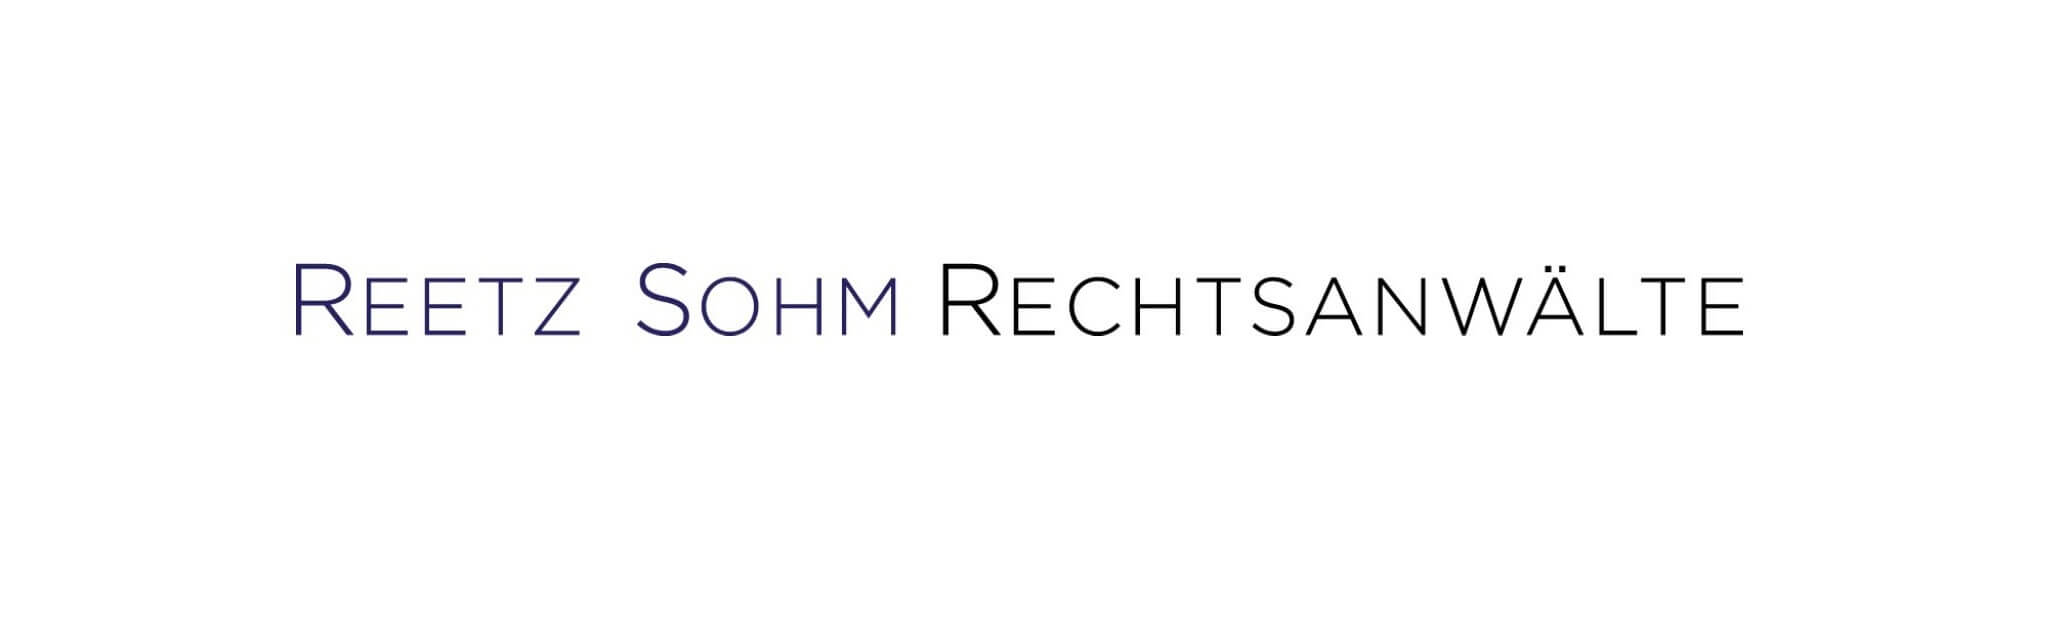 logo Reetz Sohm Rechtsanwälte